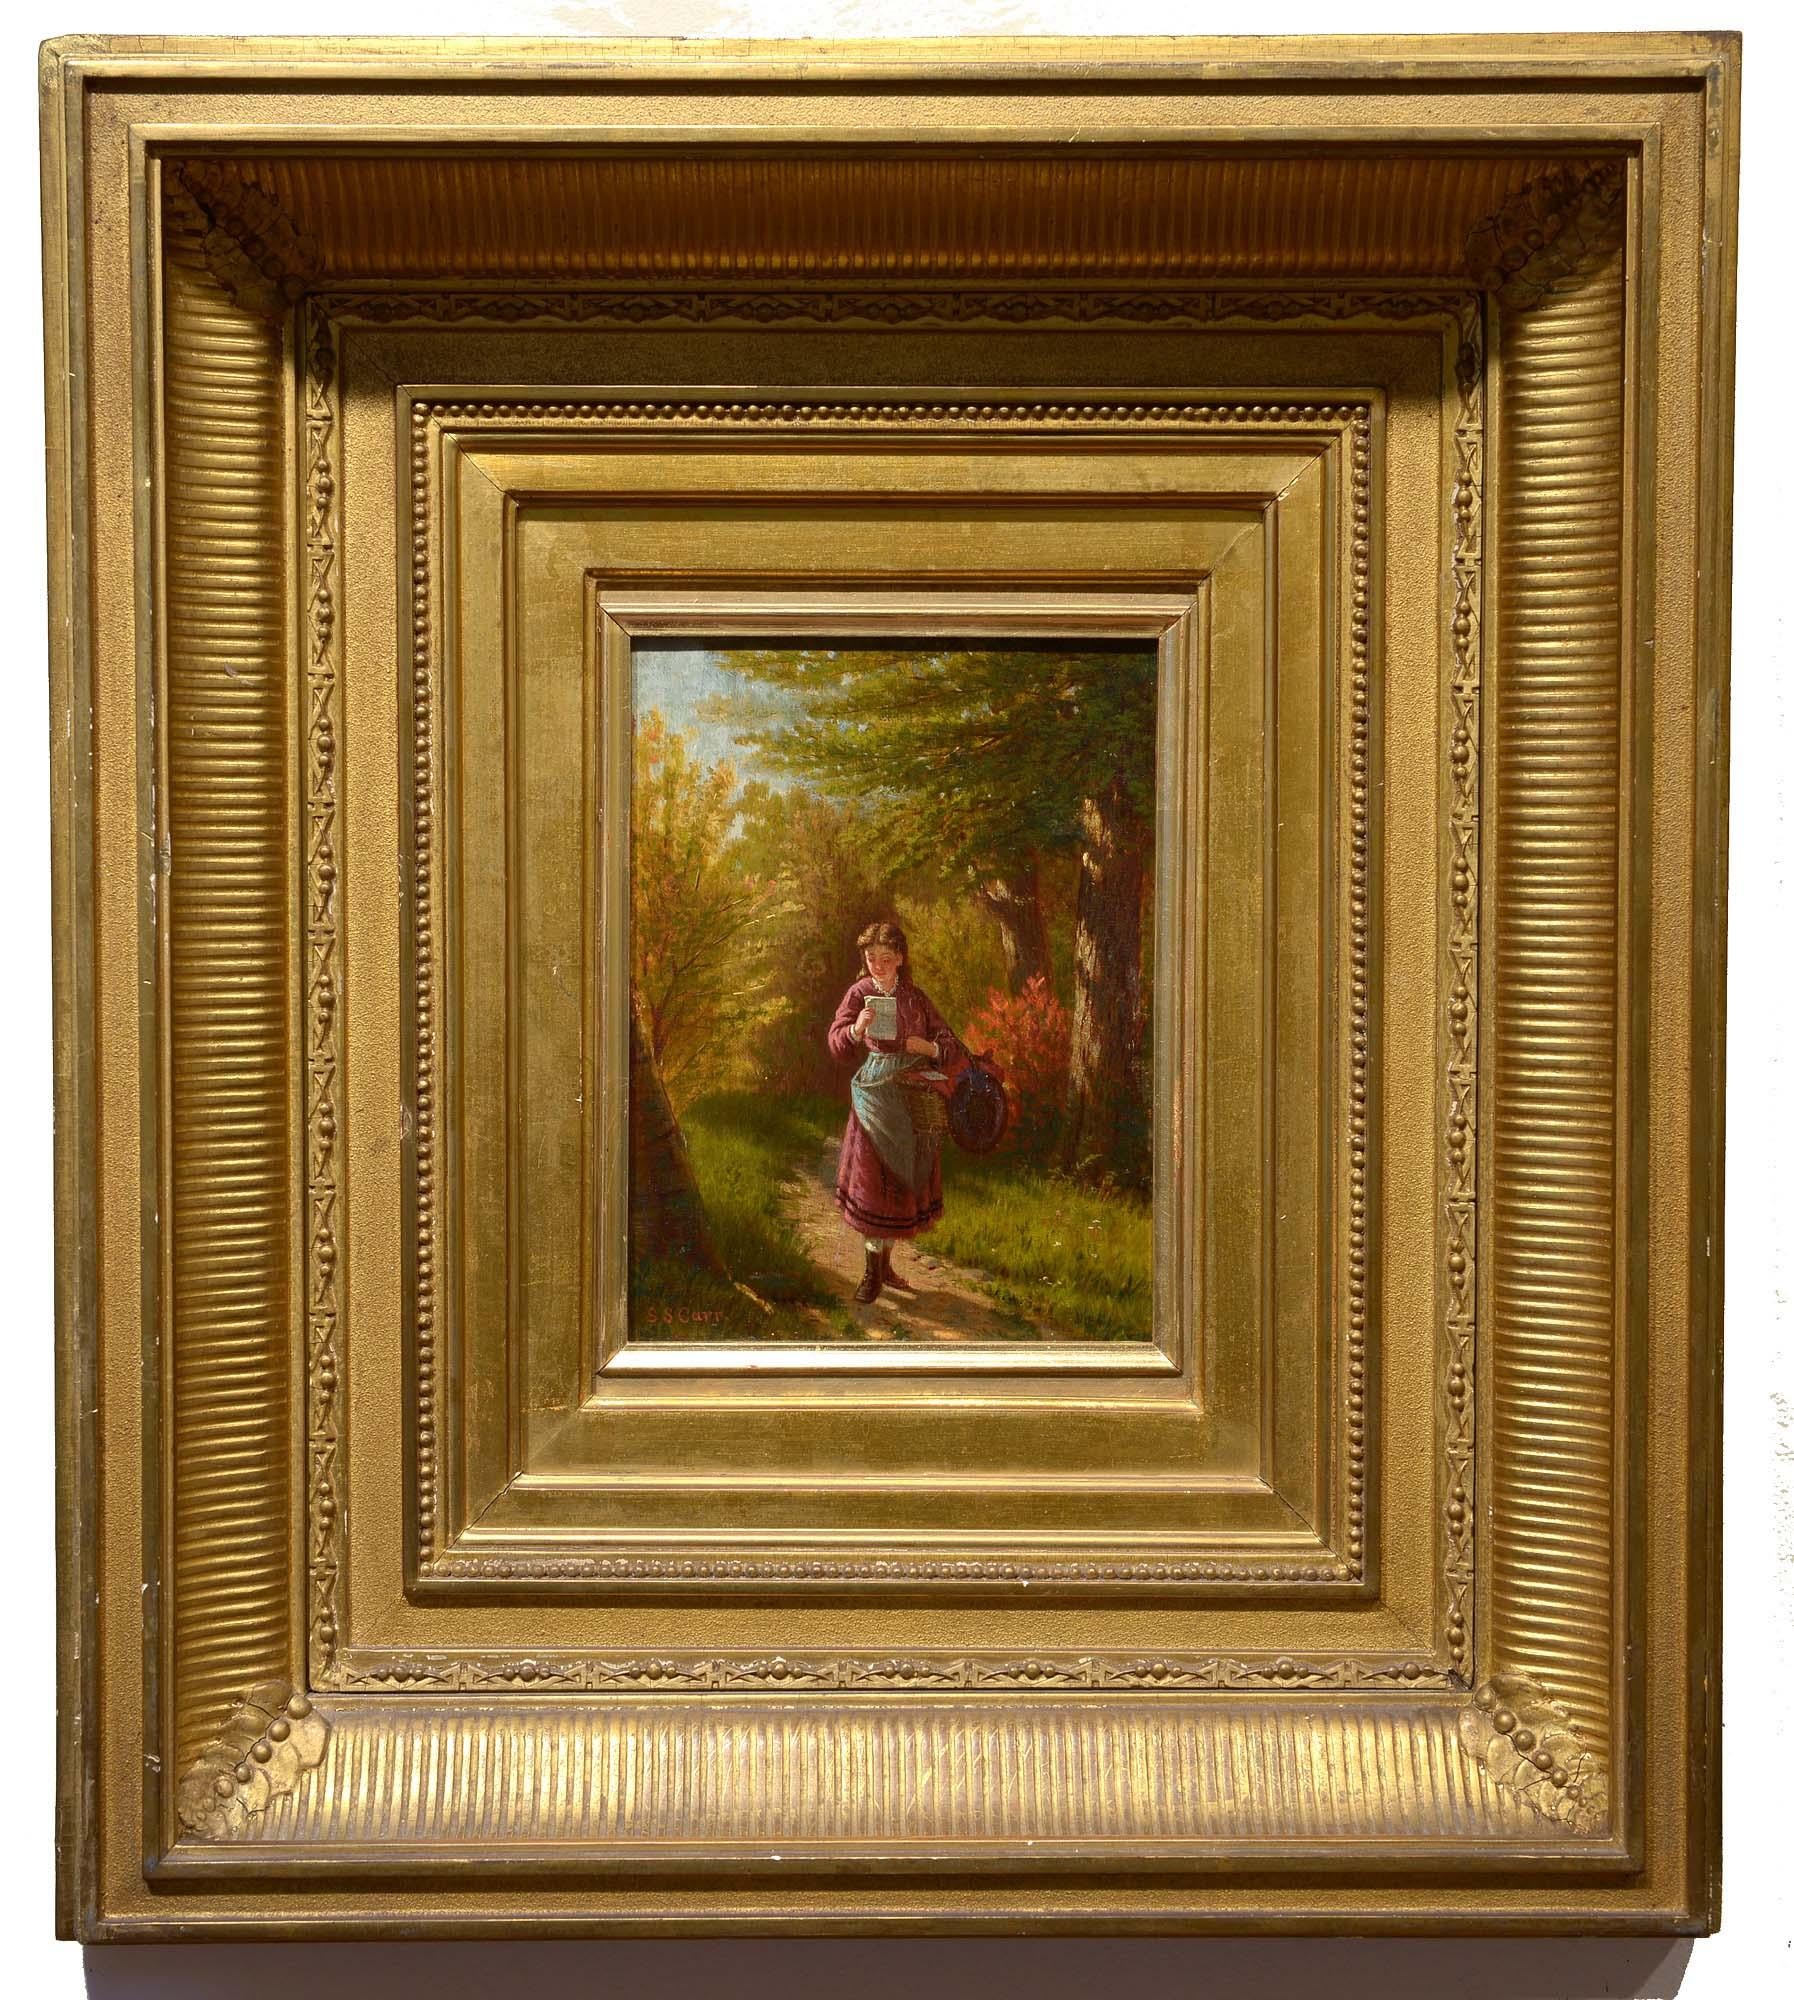 The Letter, fin du 19e siècle, américain, réalisme, huile sur panneau, figuratif, la forêt - Painting de Samuel S. Carr